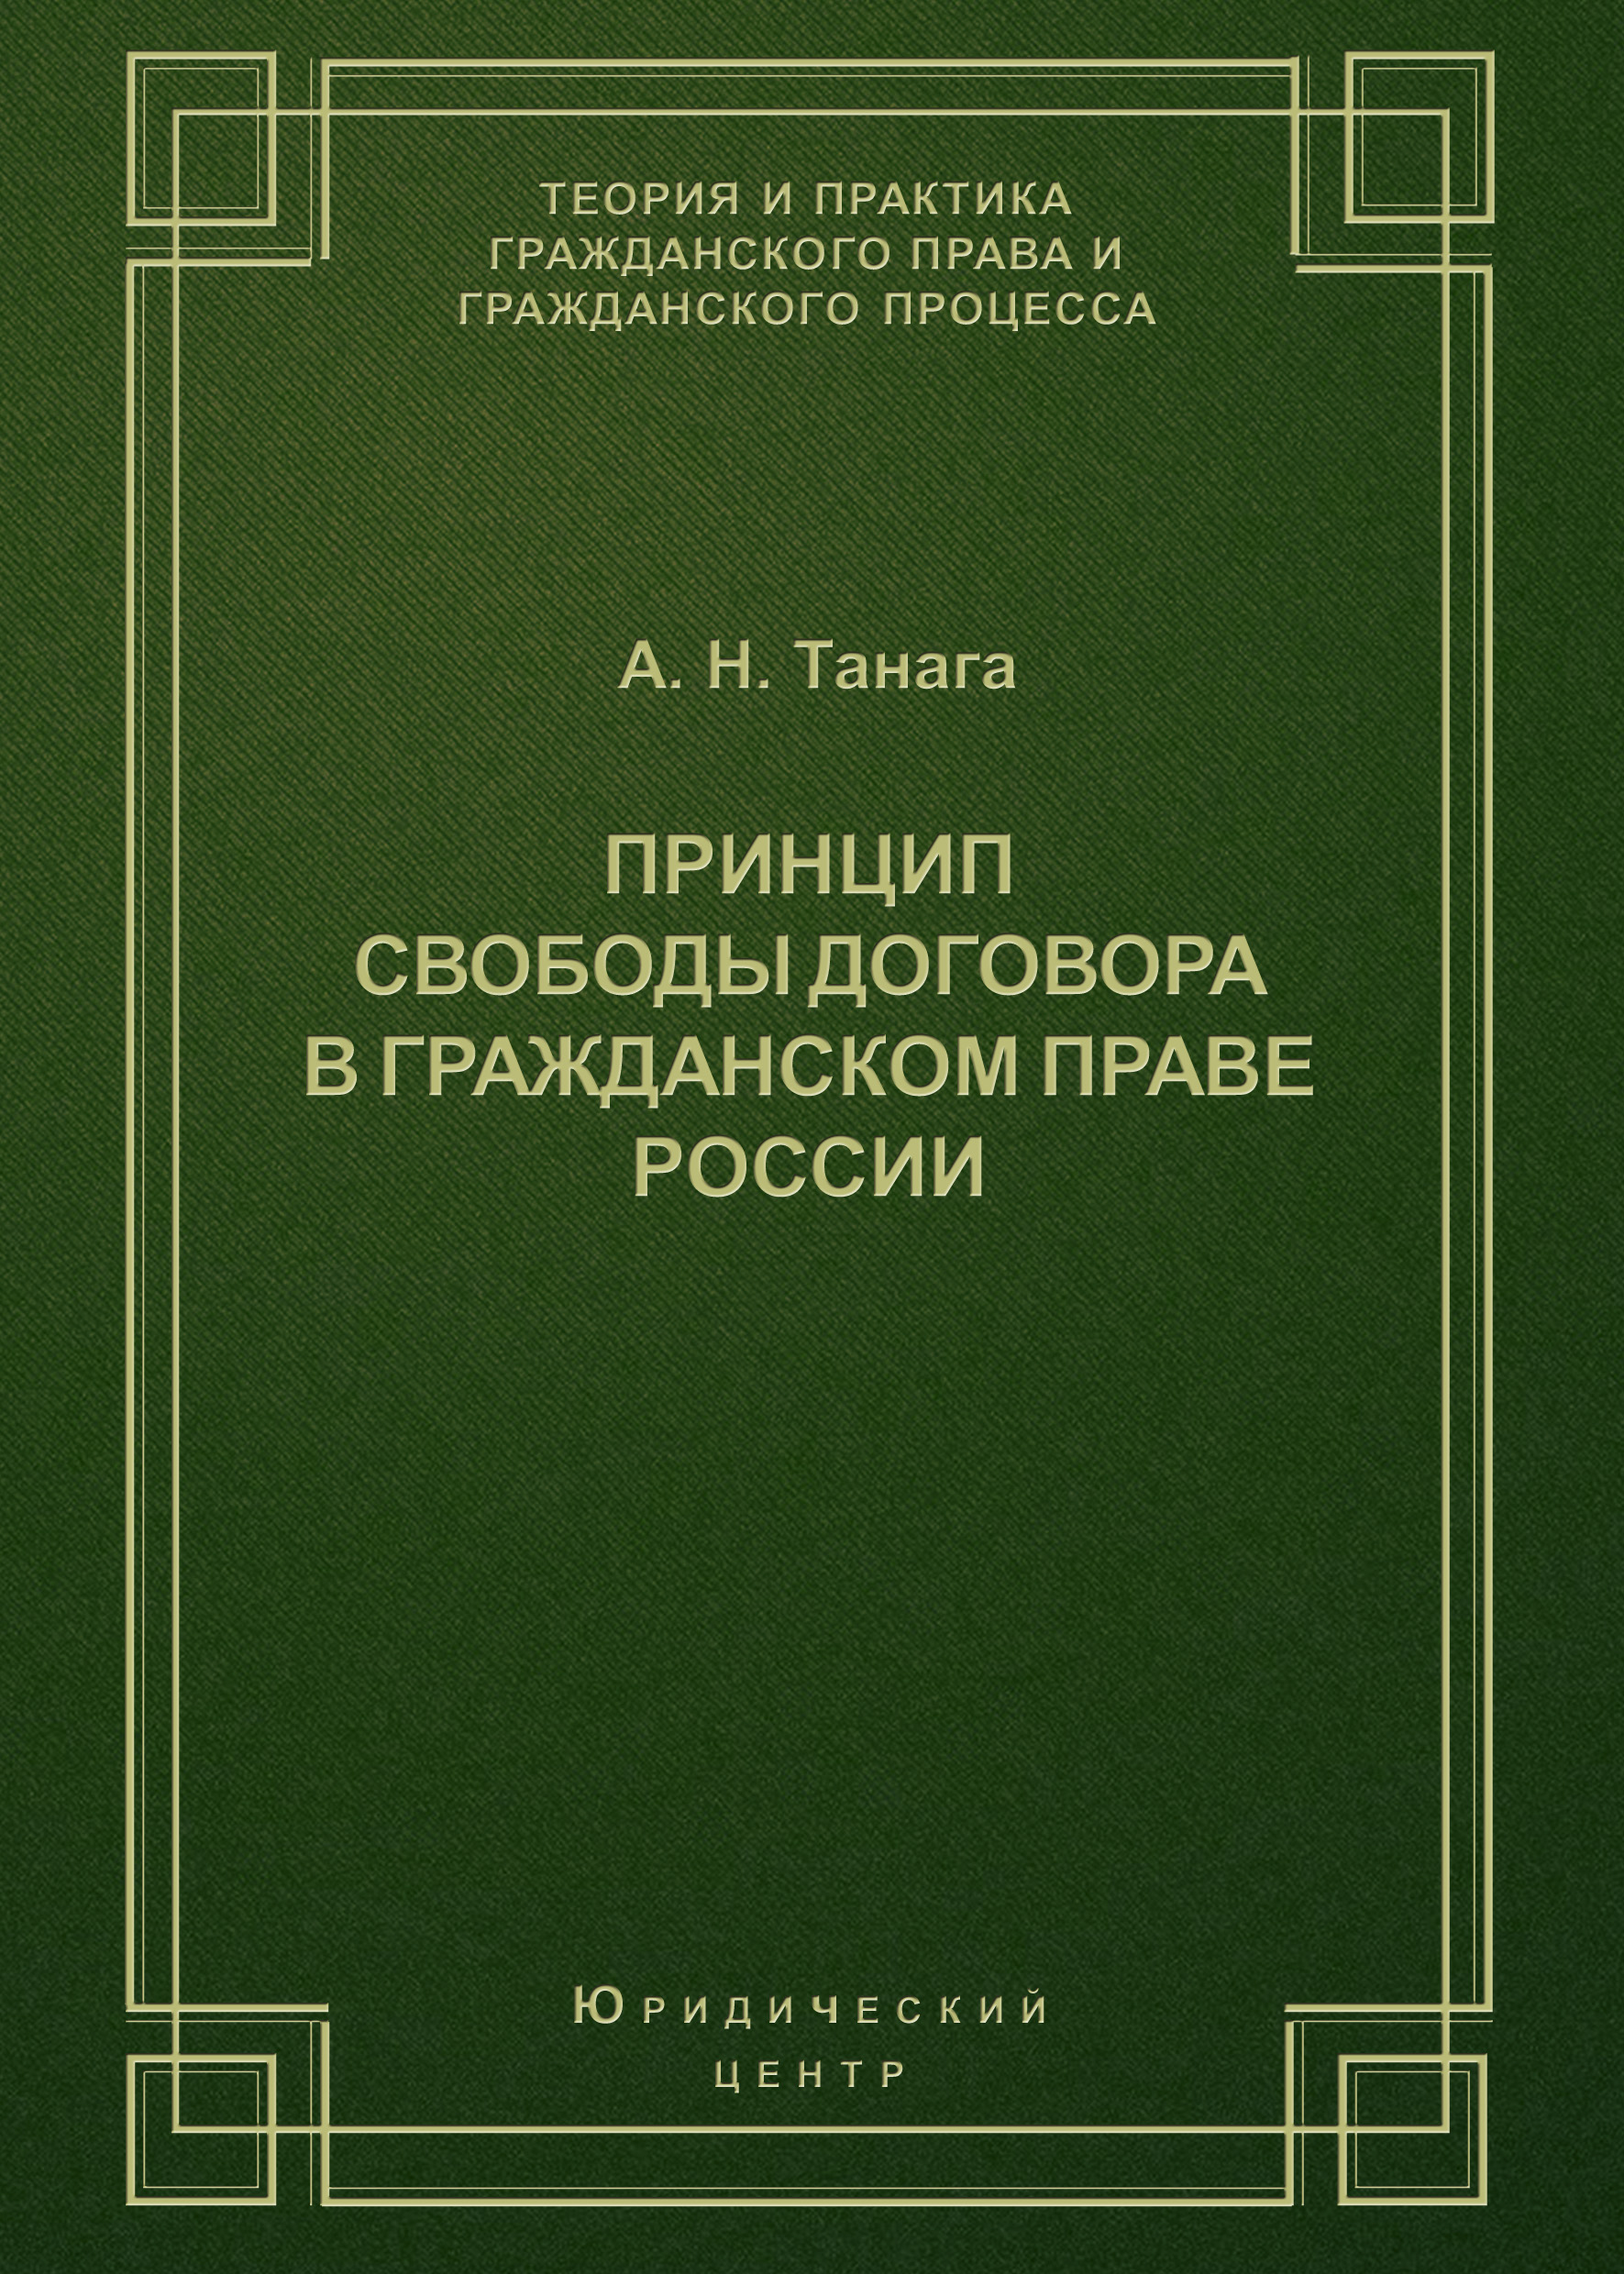 Принцип свободы договора в гражданском праве России